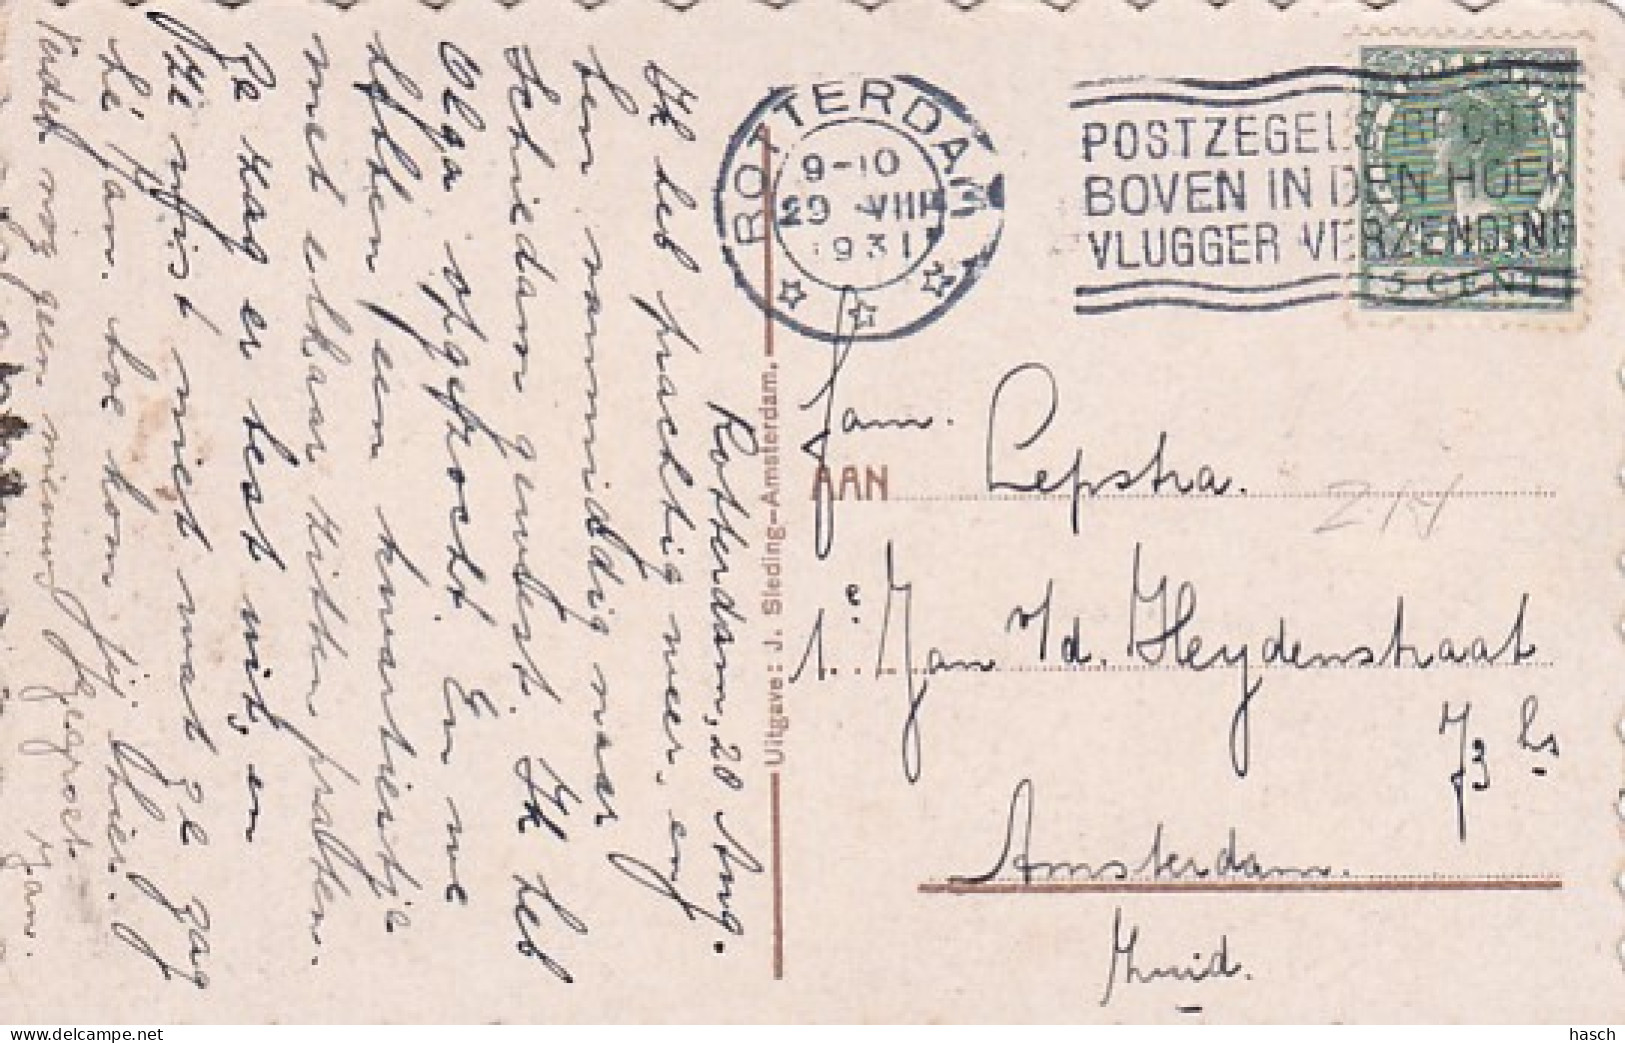 4844585Schiedam, Westvest Met Molens.1931.  - Schiedam